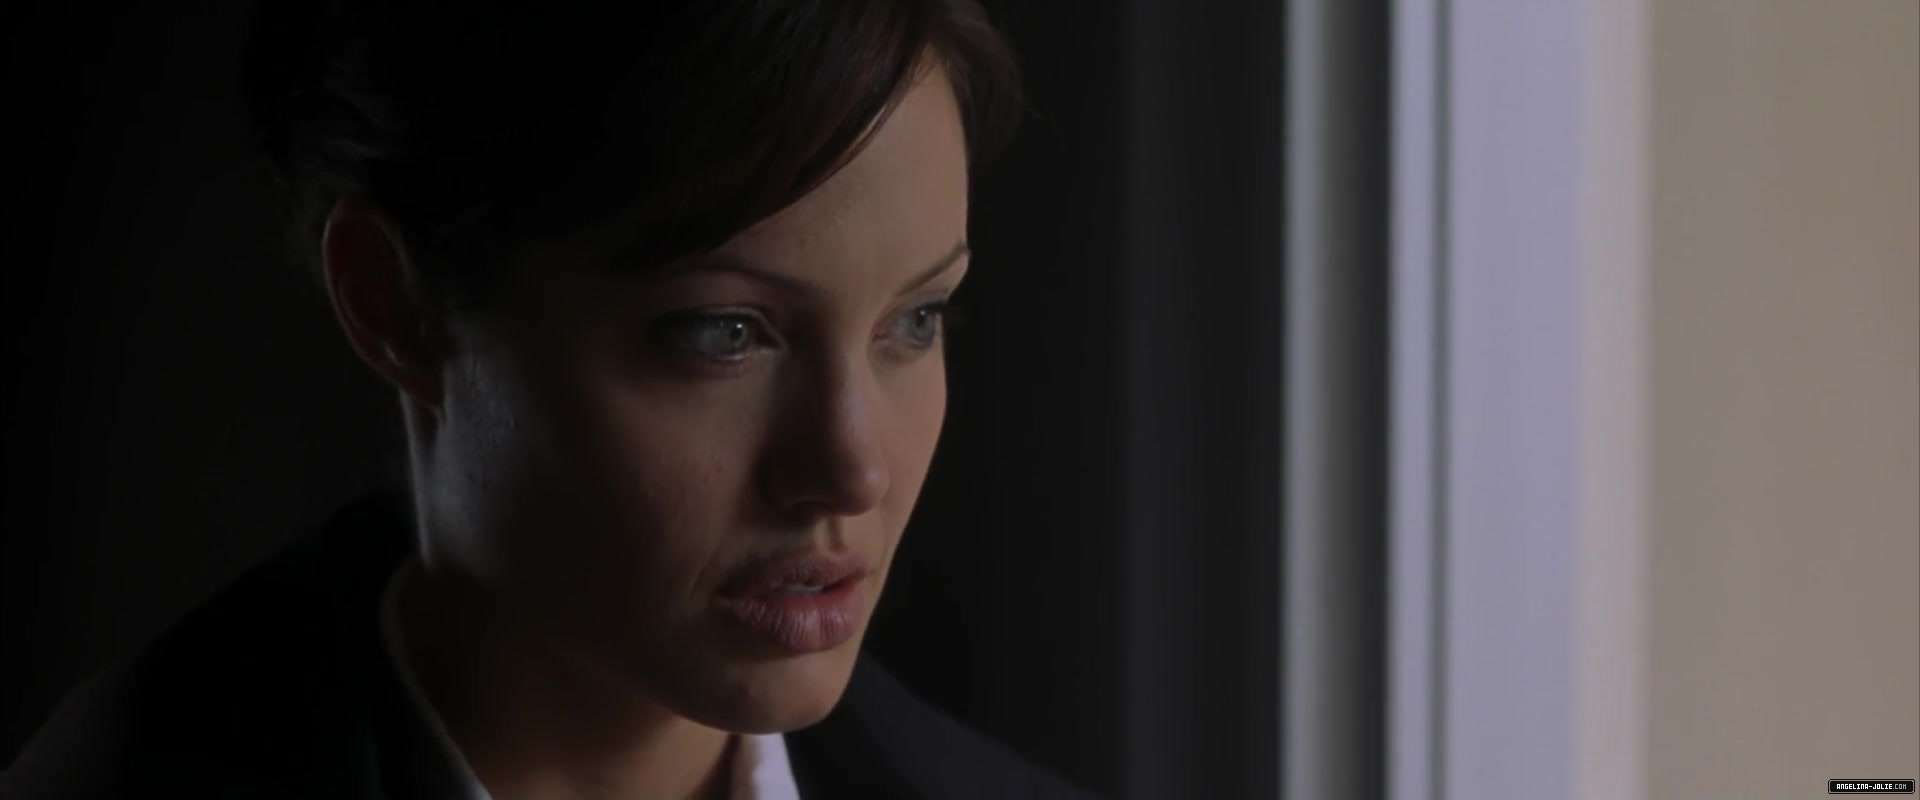 Забирая жизни 2. Анджелина Джоли забирая жизни. Клэр Ригби адвокат дьявола.